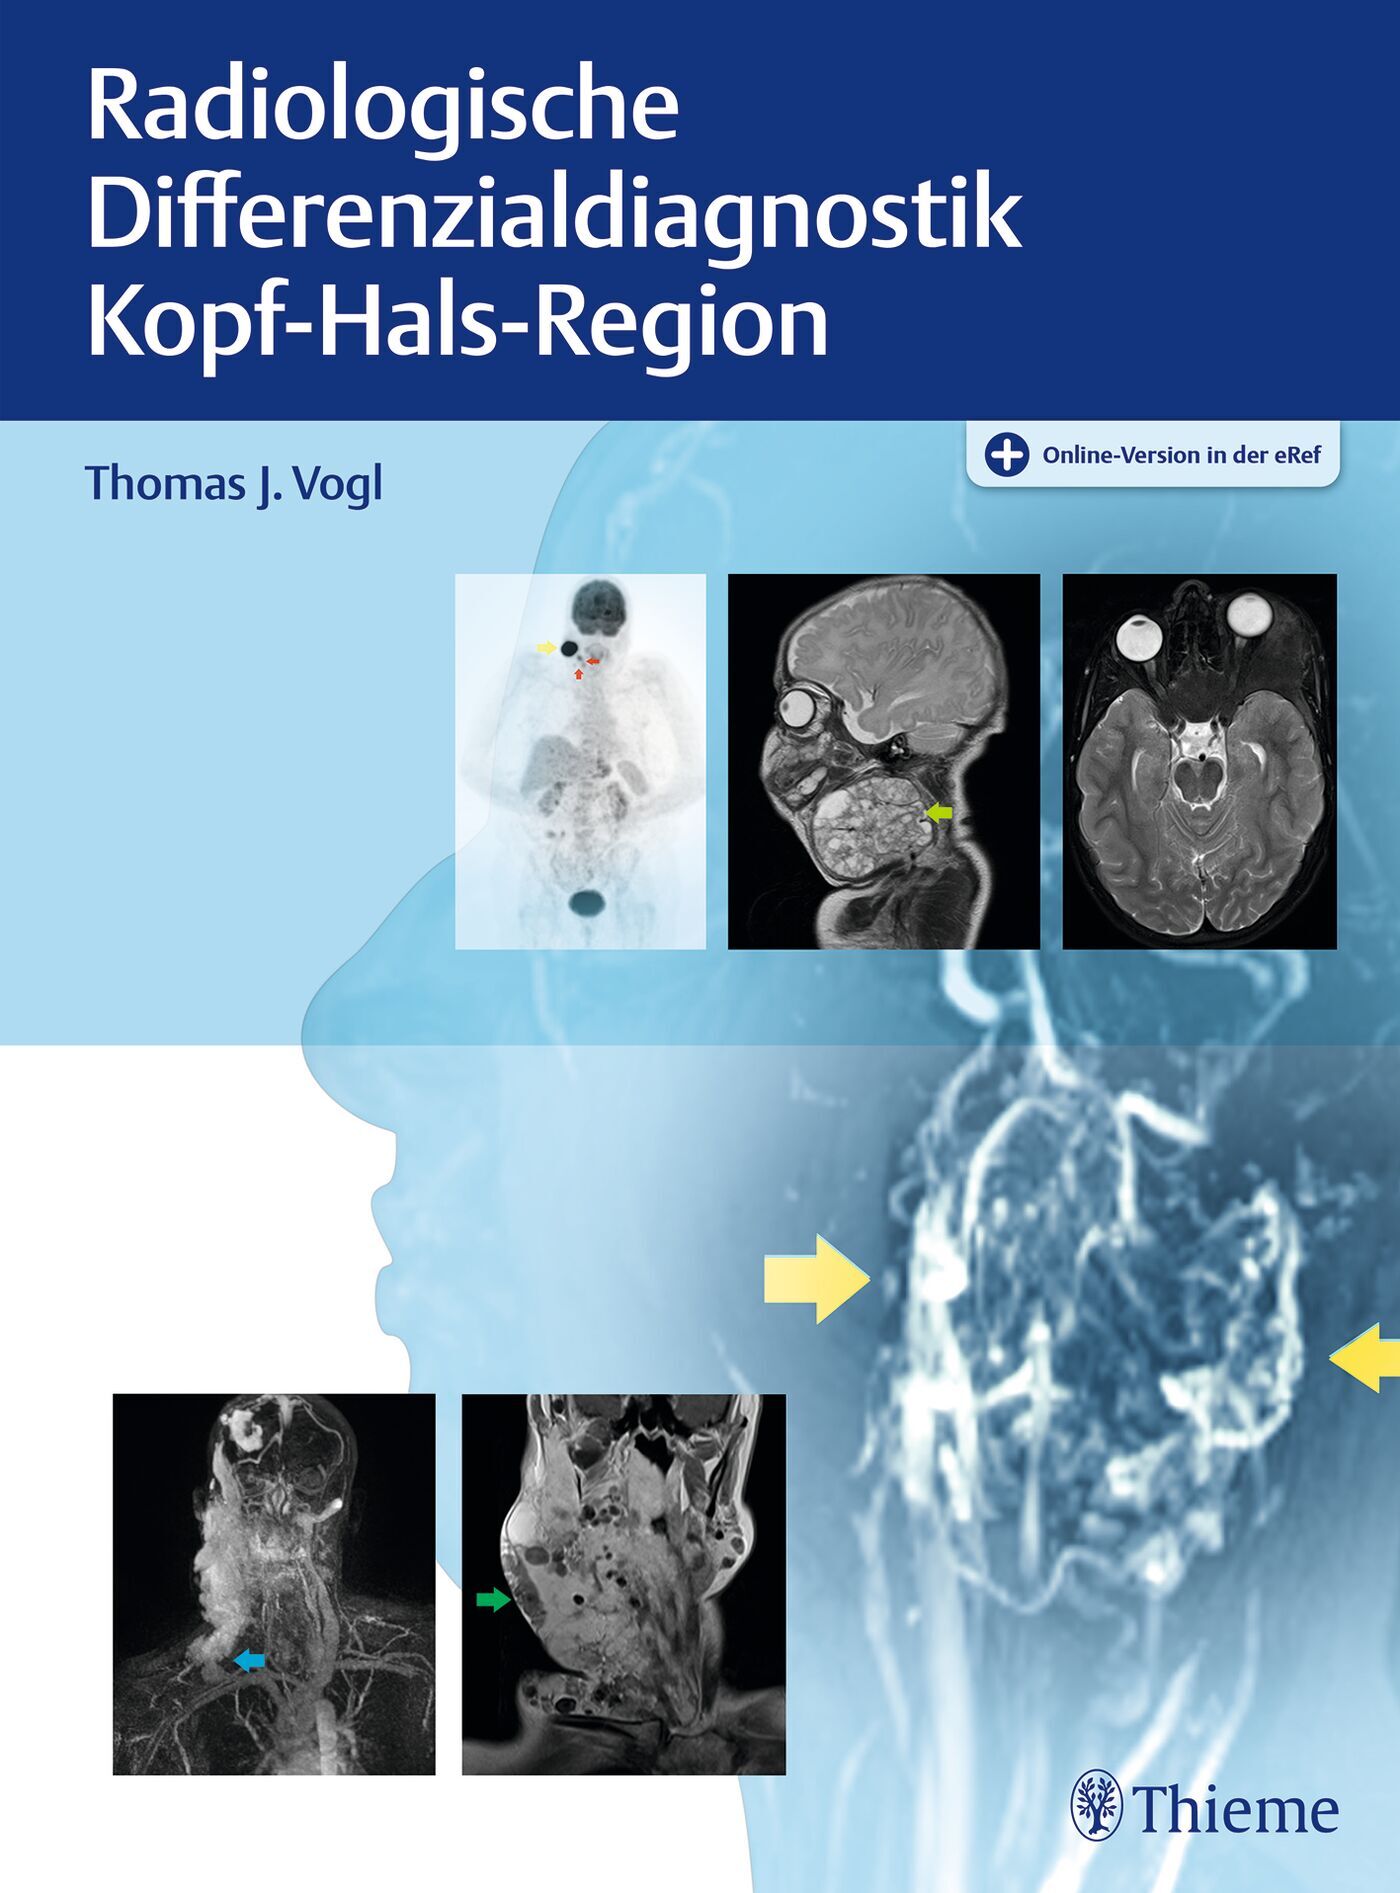 Radiologische Differenzialdiagnostik Kopf-Hals-Region, 9783132414891